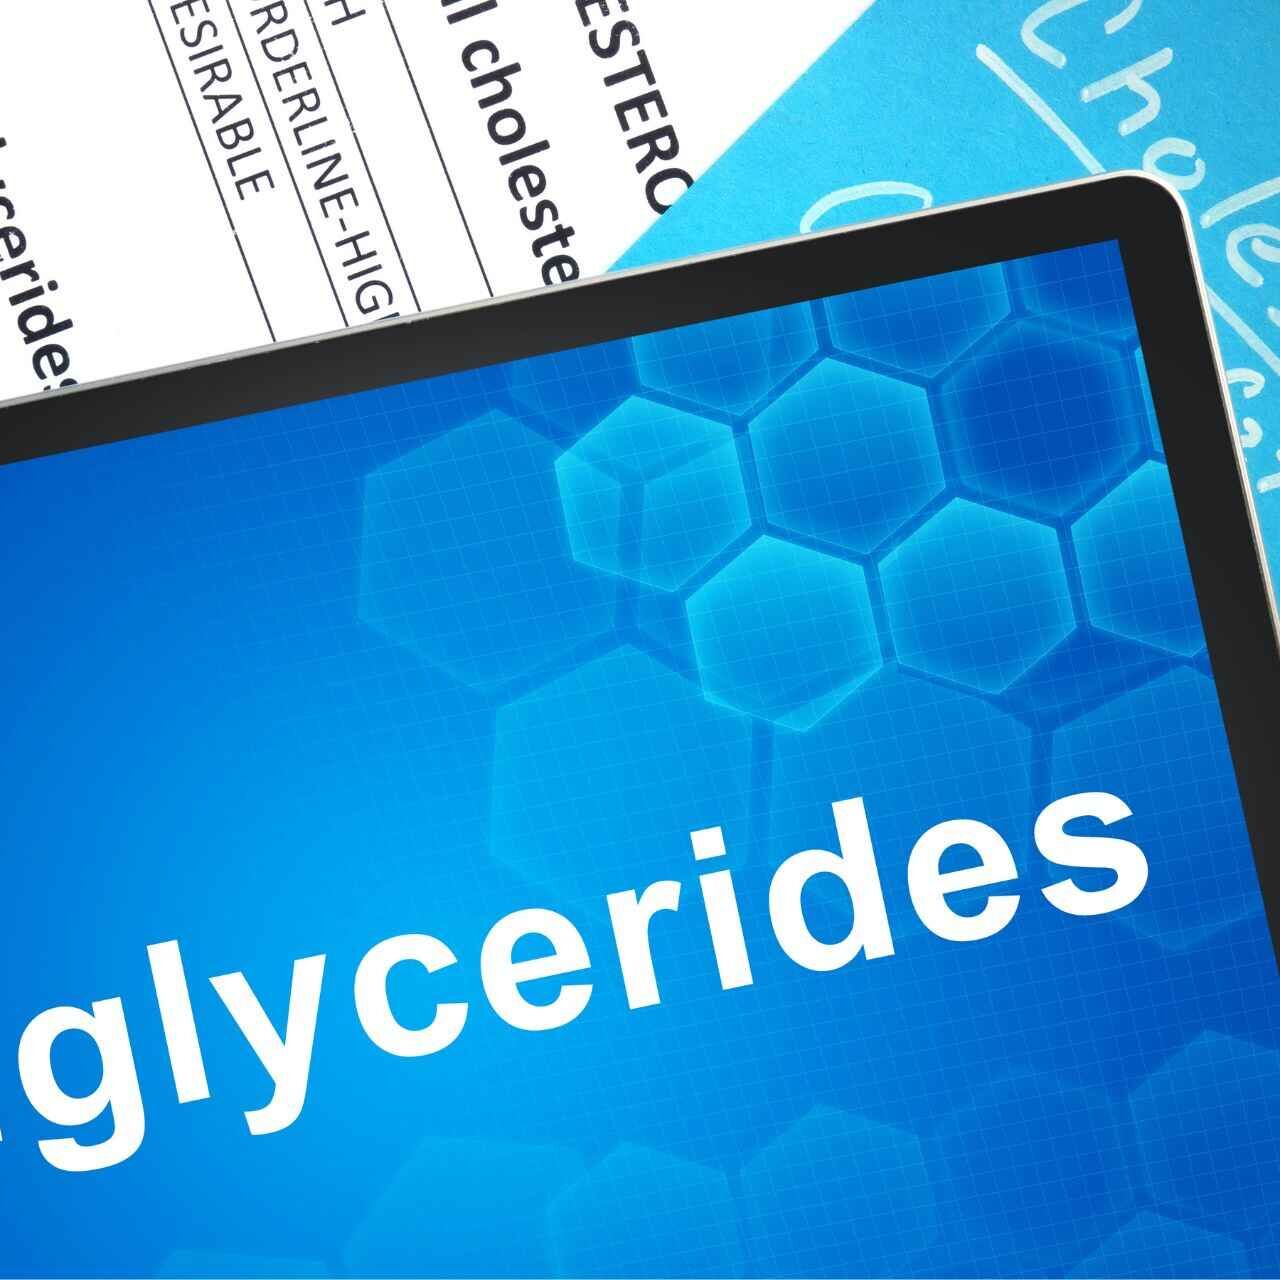 Trigliceridi: cause, sintomi e rimedi in un'ottica innovativa